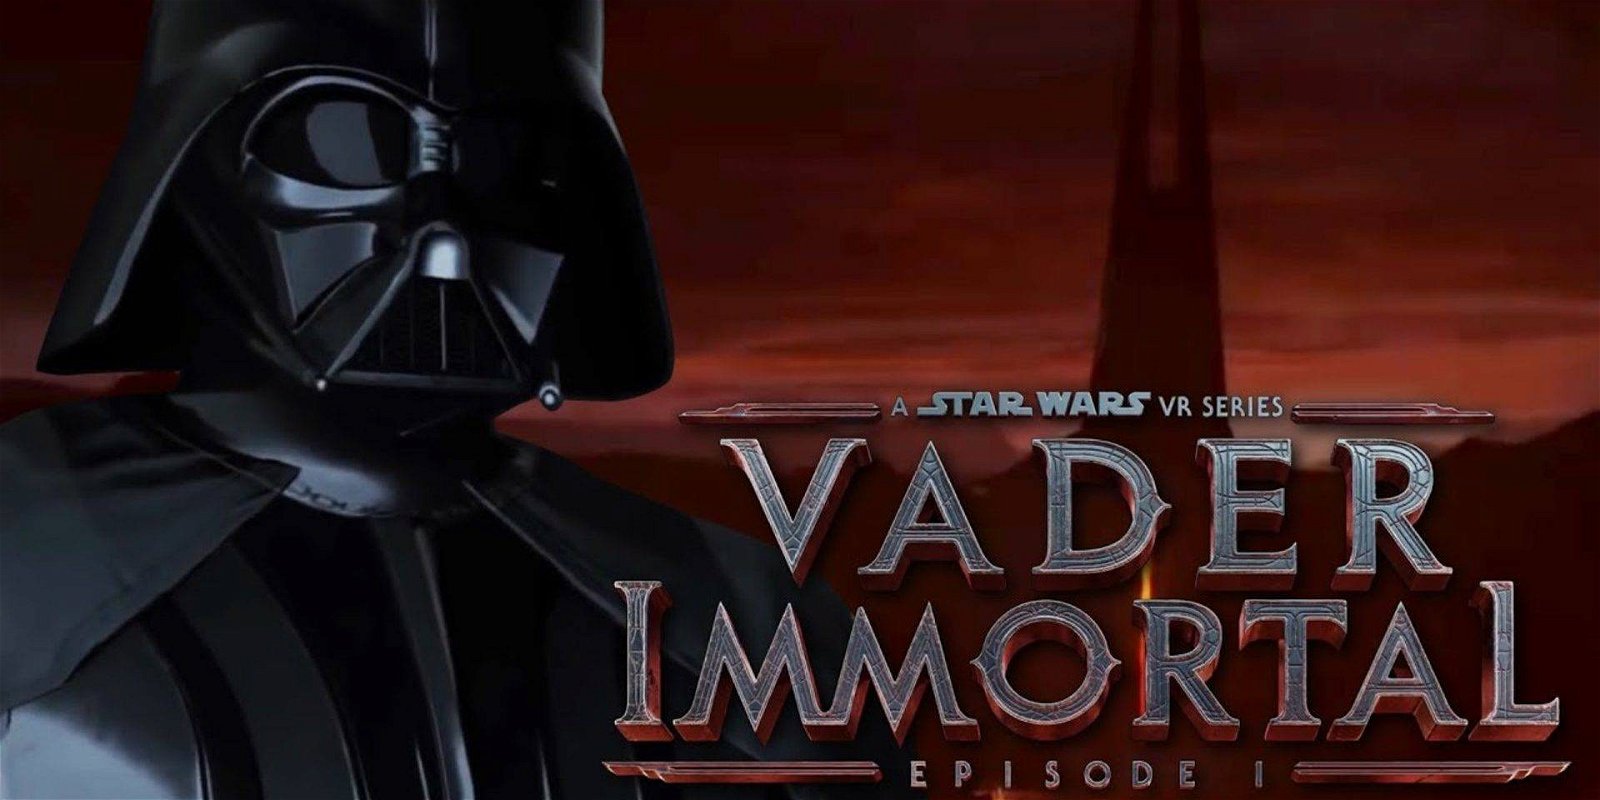 Immagine di Vader Immortal: Star Wars VR Series - Episodio 1 disponibile